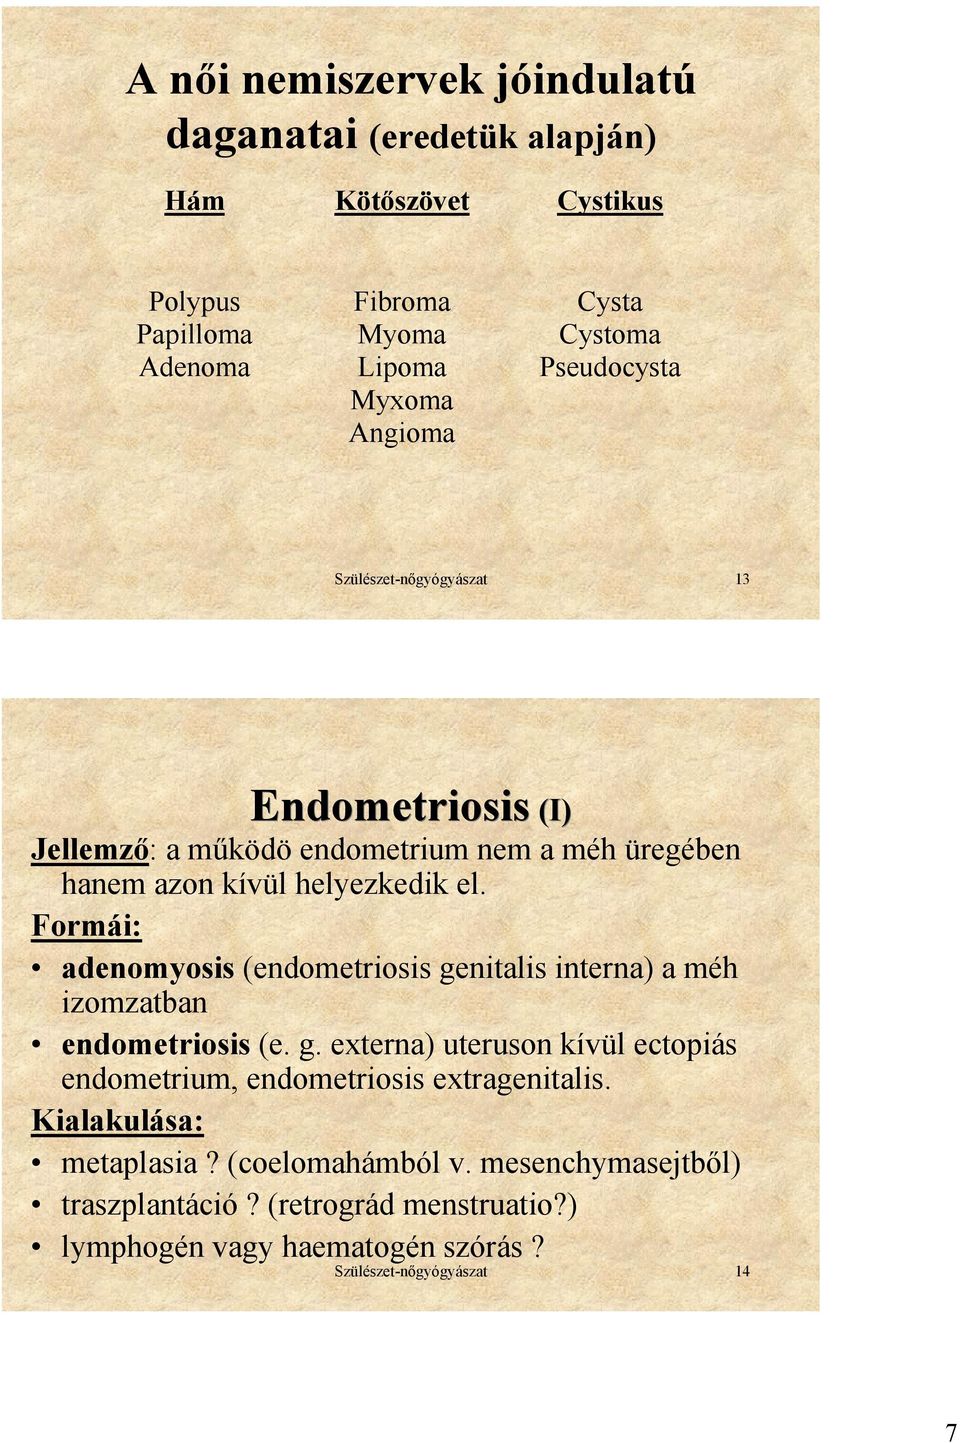 Formái: adenomyosis (endometriosis genitalis interna) a méh izomzatban endometriosis (e. g. externa) uteruson kívül ectopiás endometrium, endometriosis extragenitalis.